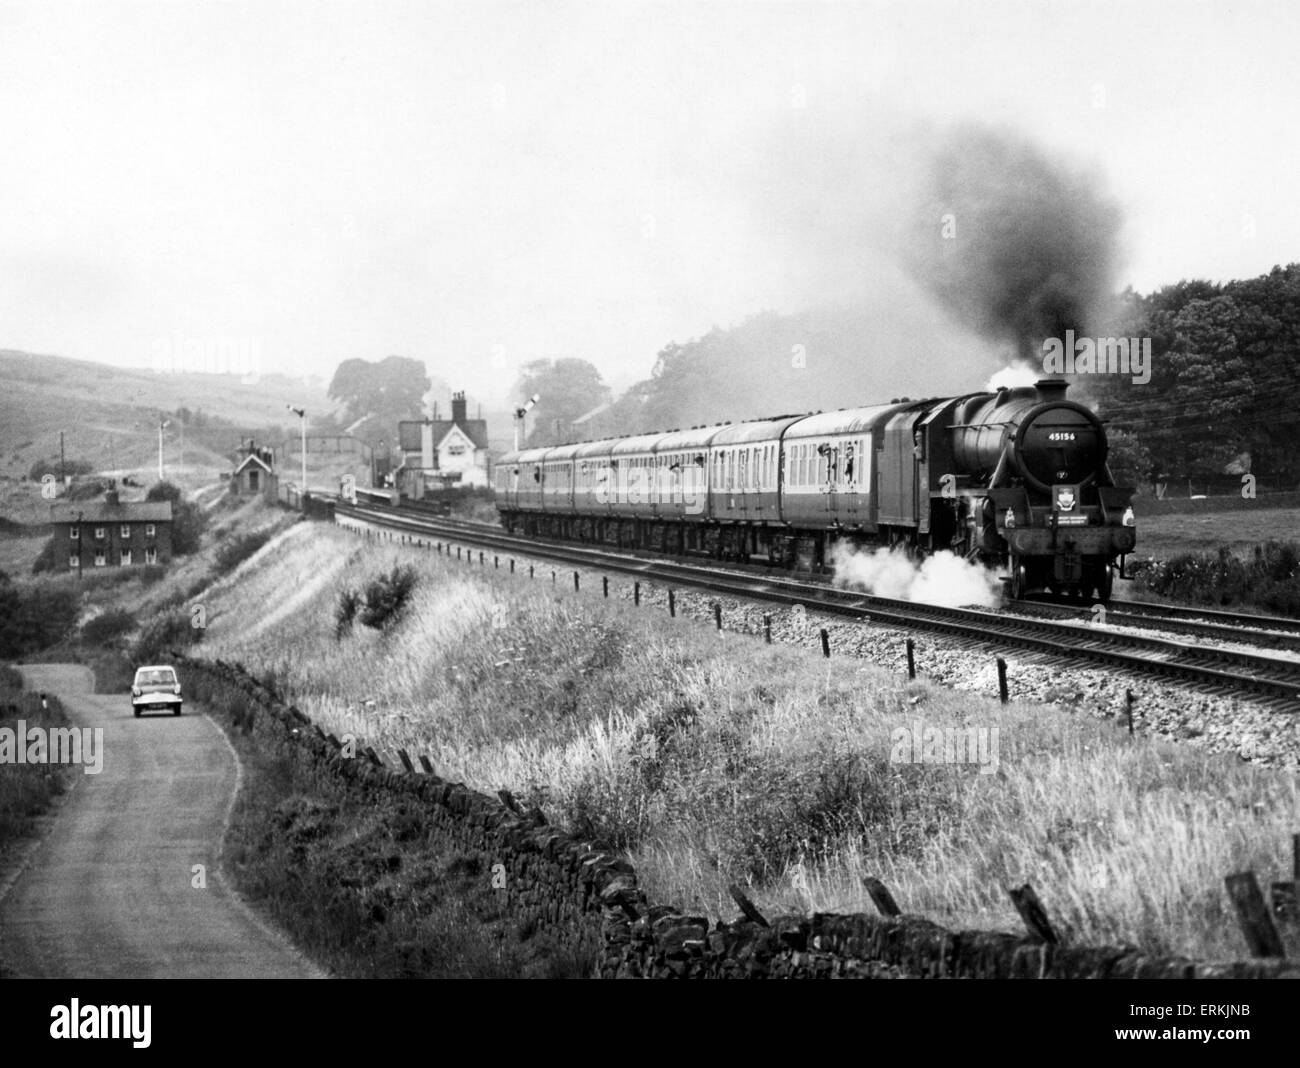 London Midland et Scottish Railway 4-6-0 Classe Stanier cinq locomotive à vapeur, le nombre 45156 têtes G.C. Le train spécial entreprises par Clapham Entre Benidorm et à régler. 4 août 1968. Banque D'Images